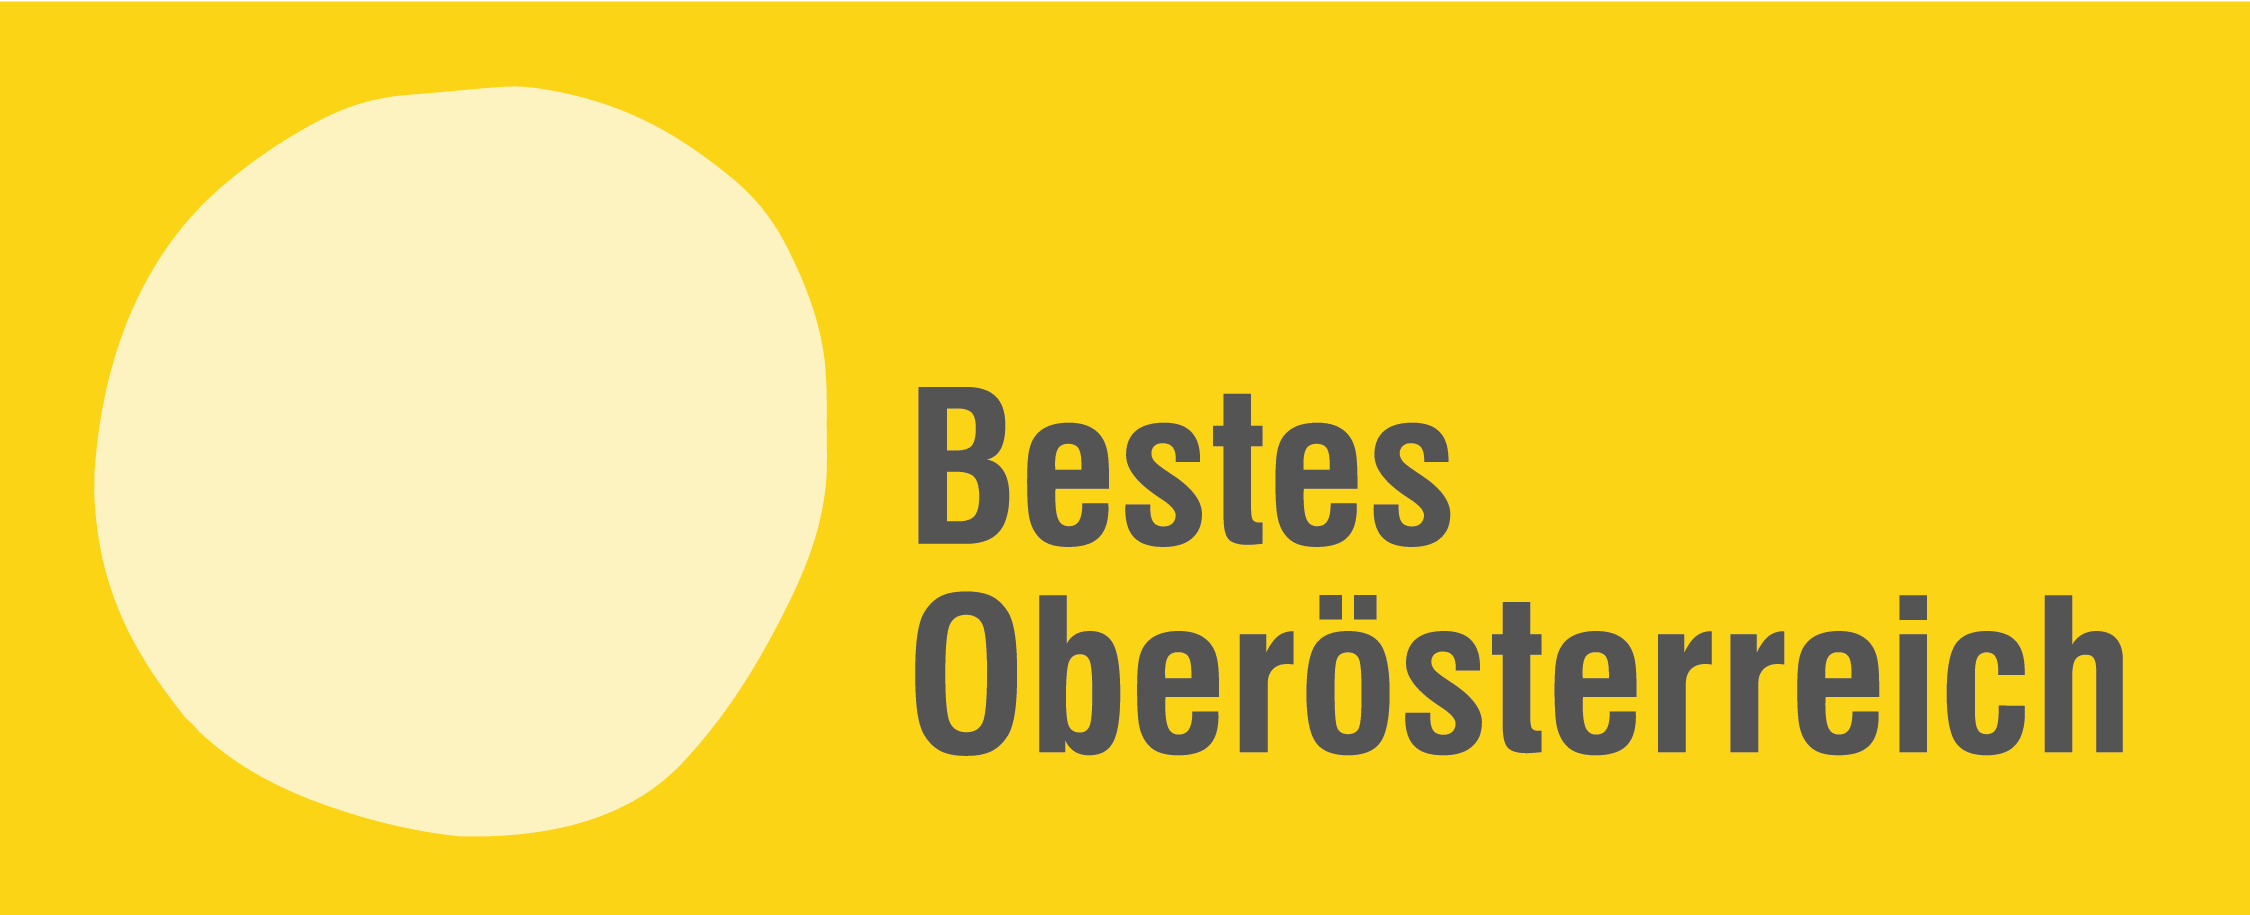 Bestes Oberösterreich - Deine Stimme am 26. September 2021 für gesunde Gesellschaft und gesunde Politik